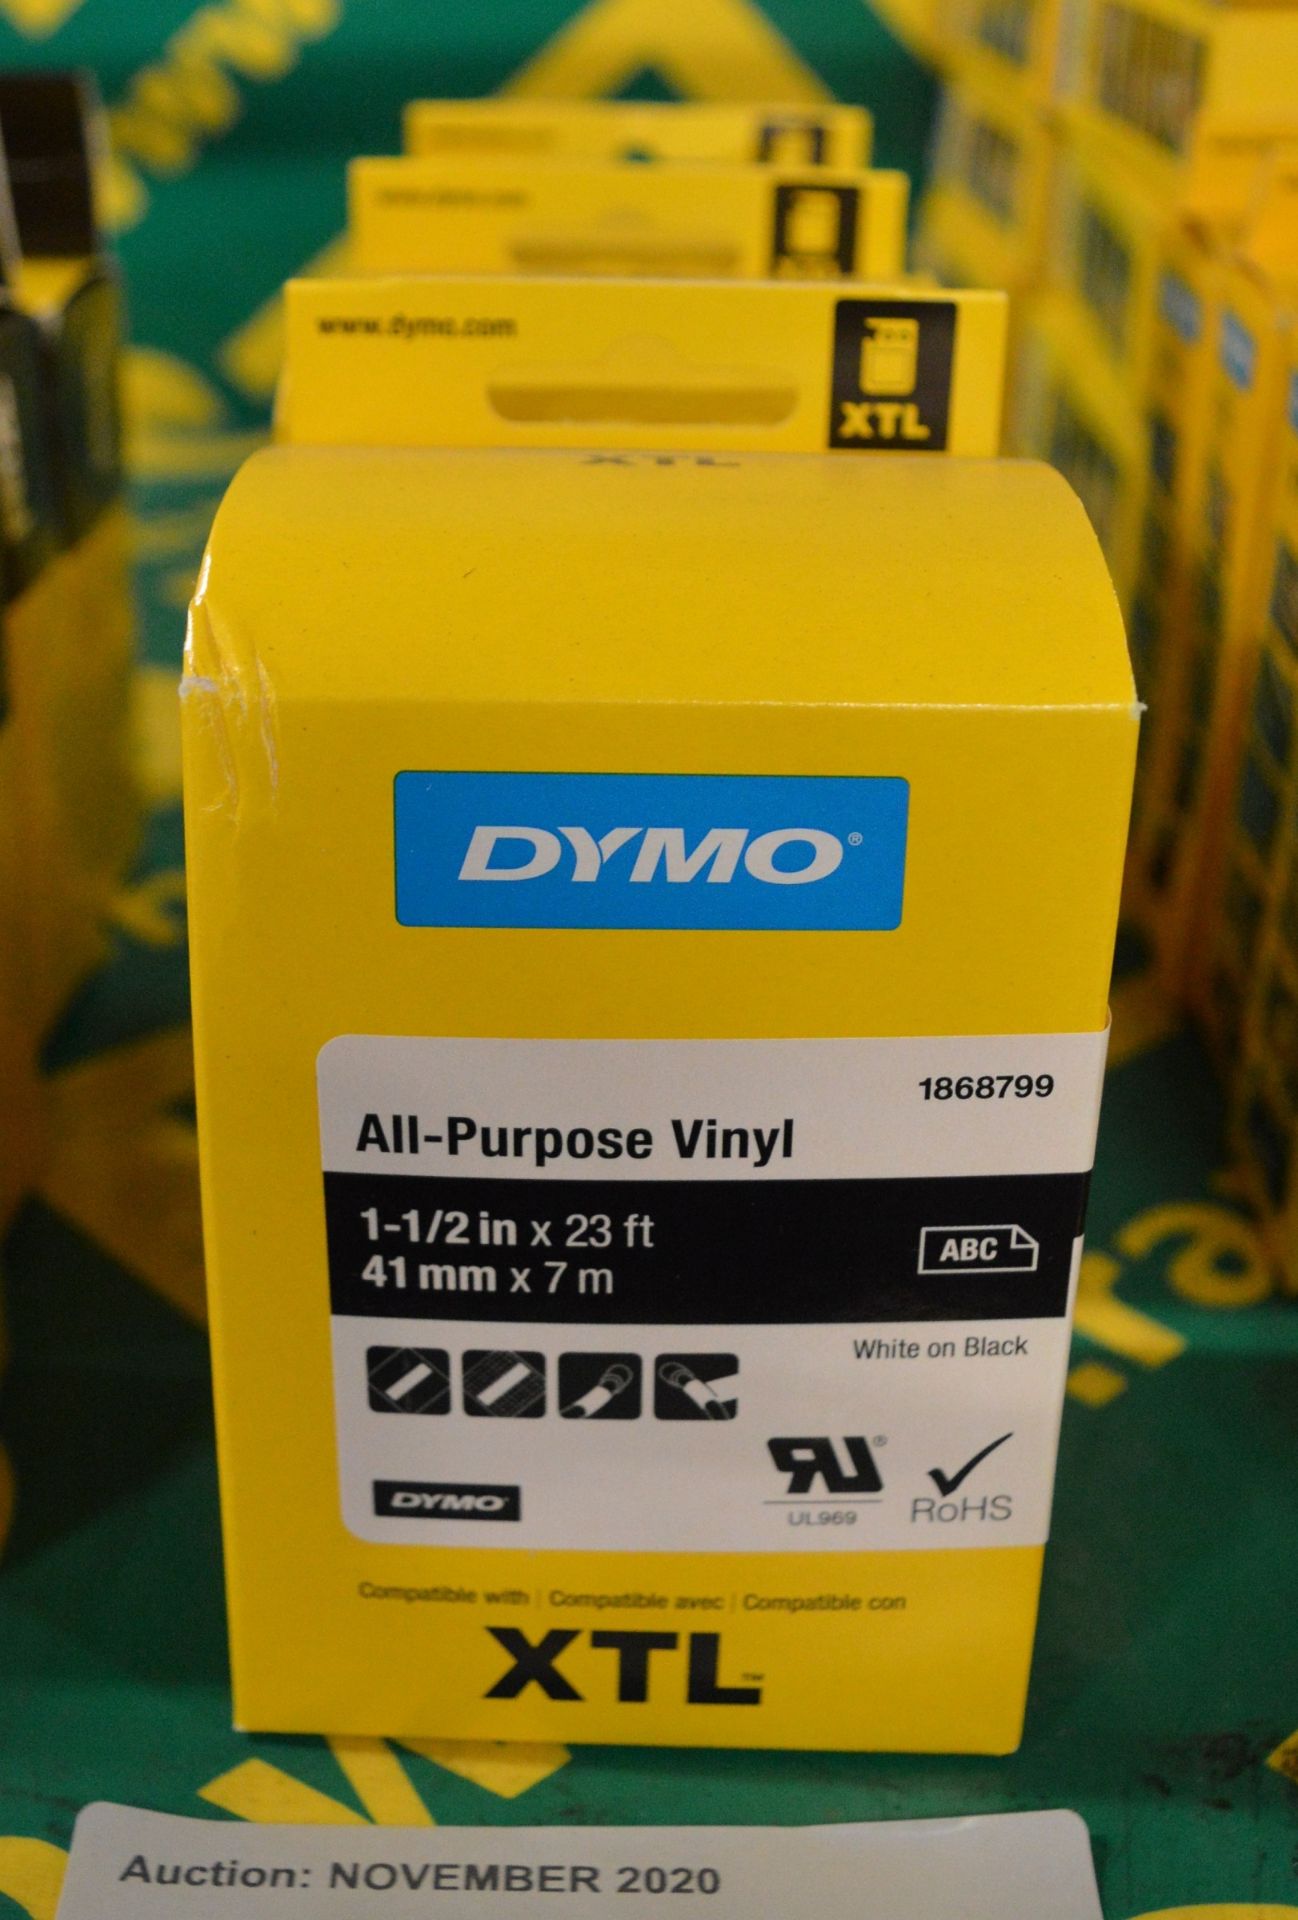 3x Dymo XTL All Purpose Vinyl - 1-1/2in x 23ft - 41mm x 7m White on Black Printer Tape